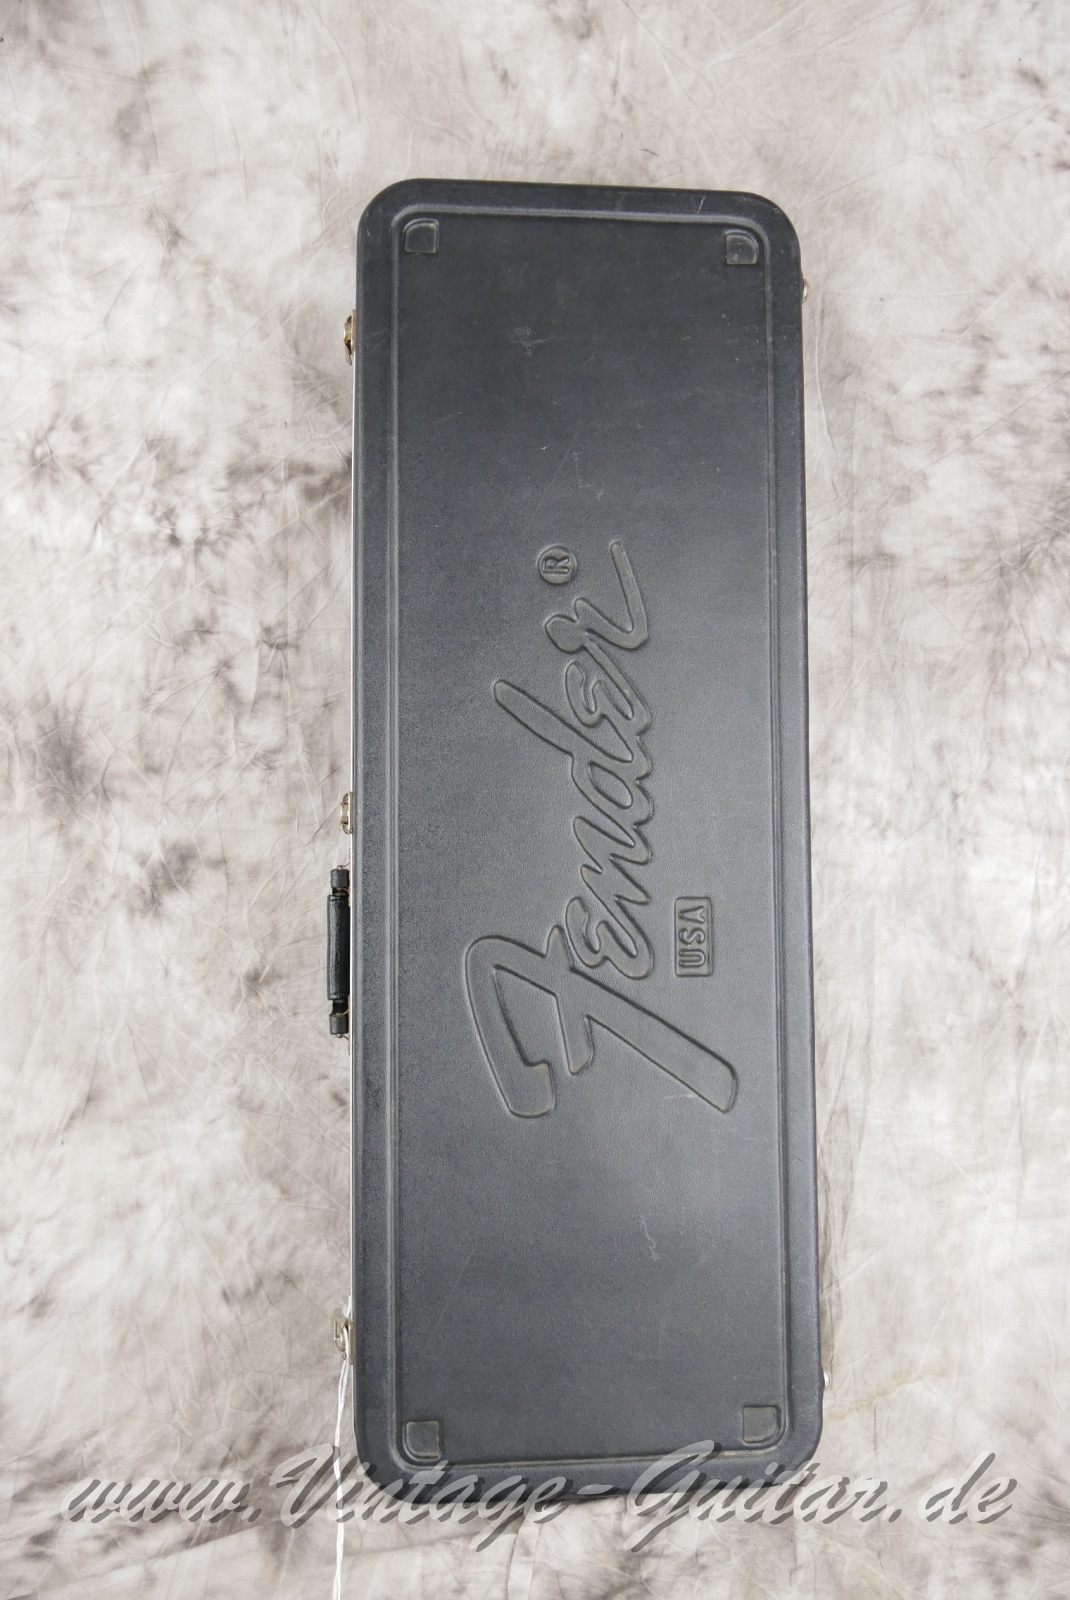 Fender-Stratocaster-American-Standard-1987-black-021.JPG